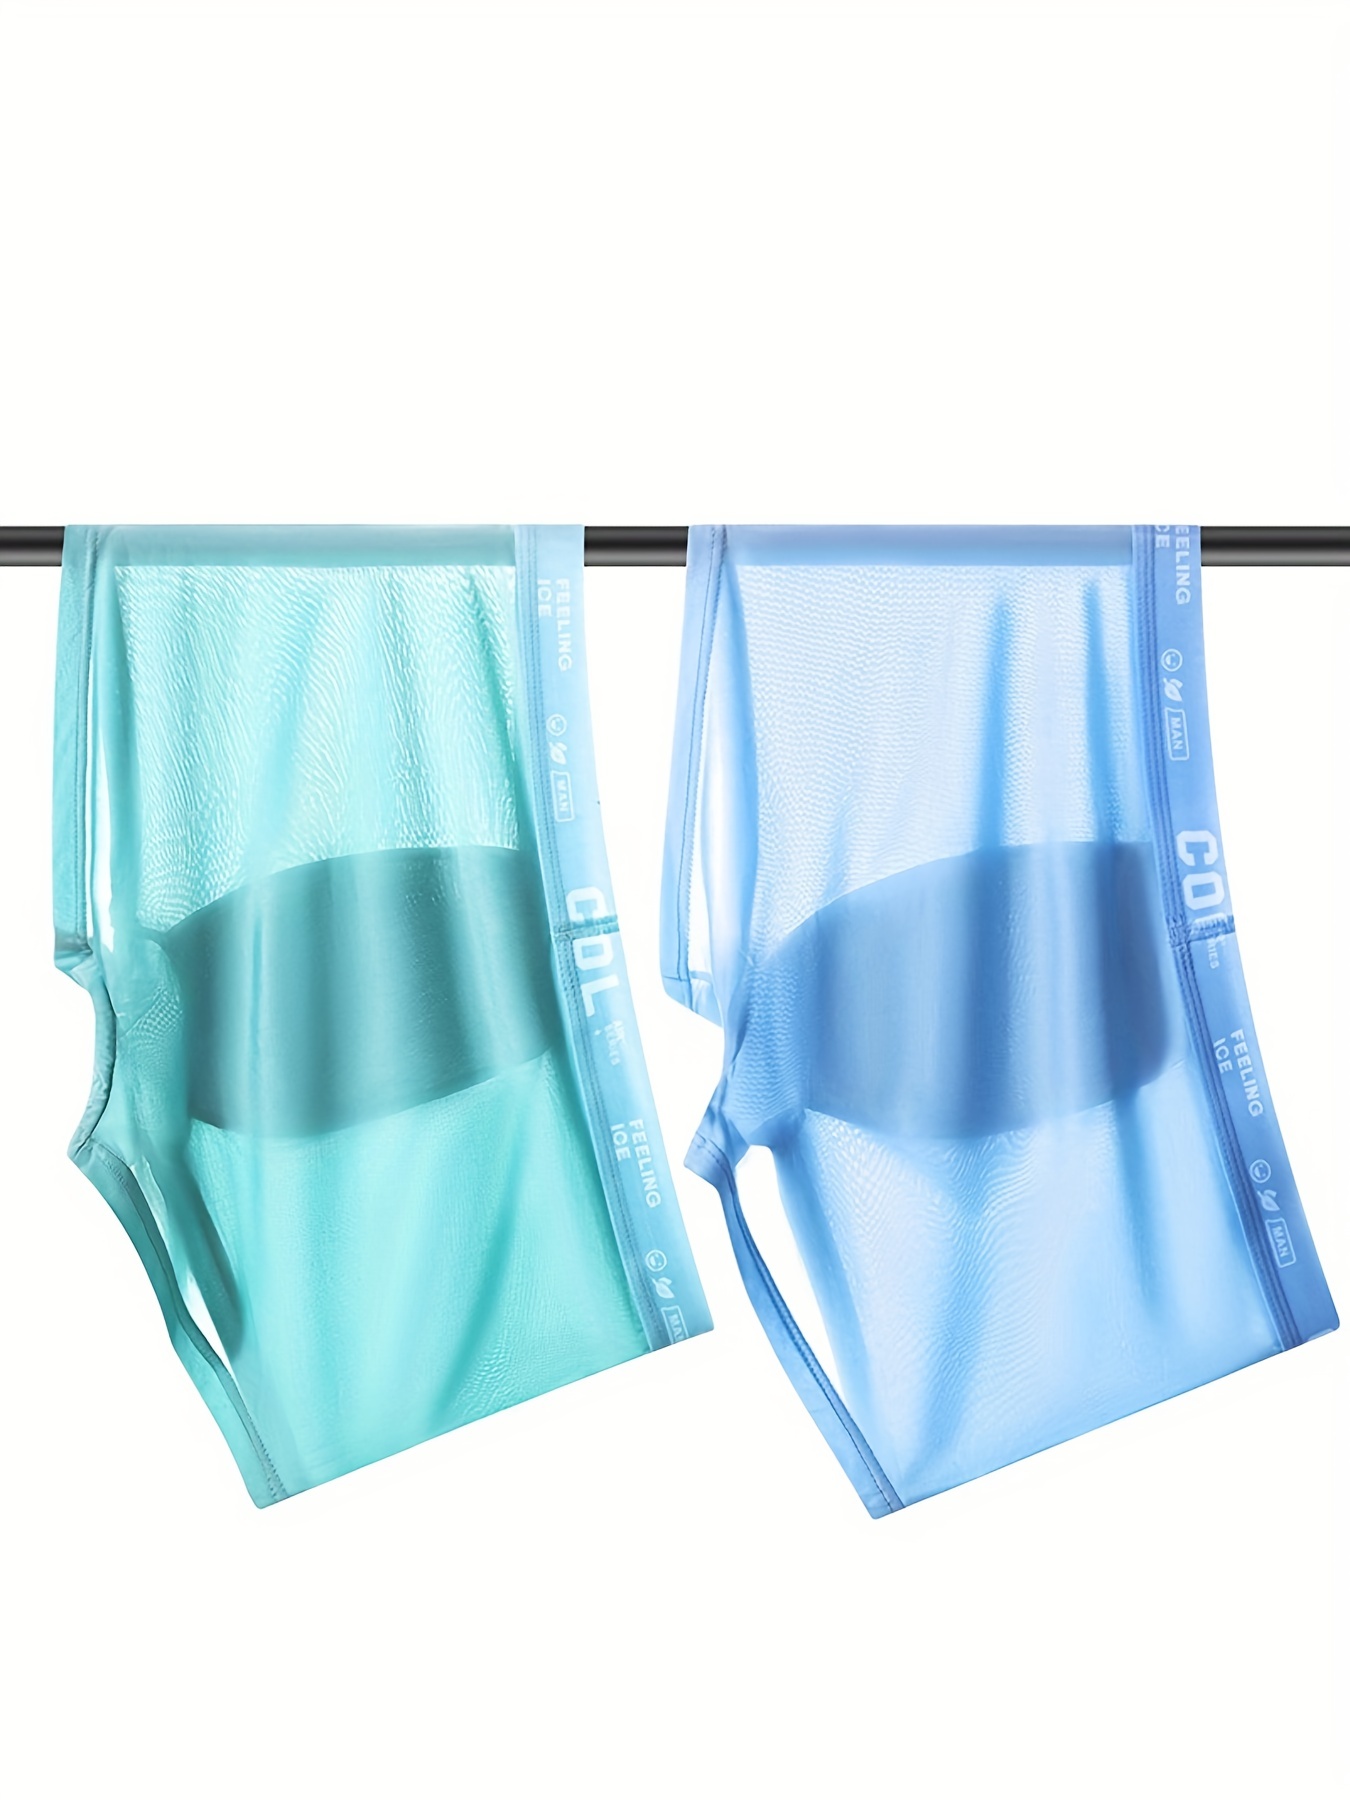 Plus size disposable men's underwear (4pcs in a pack), Men's